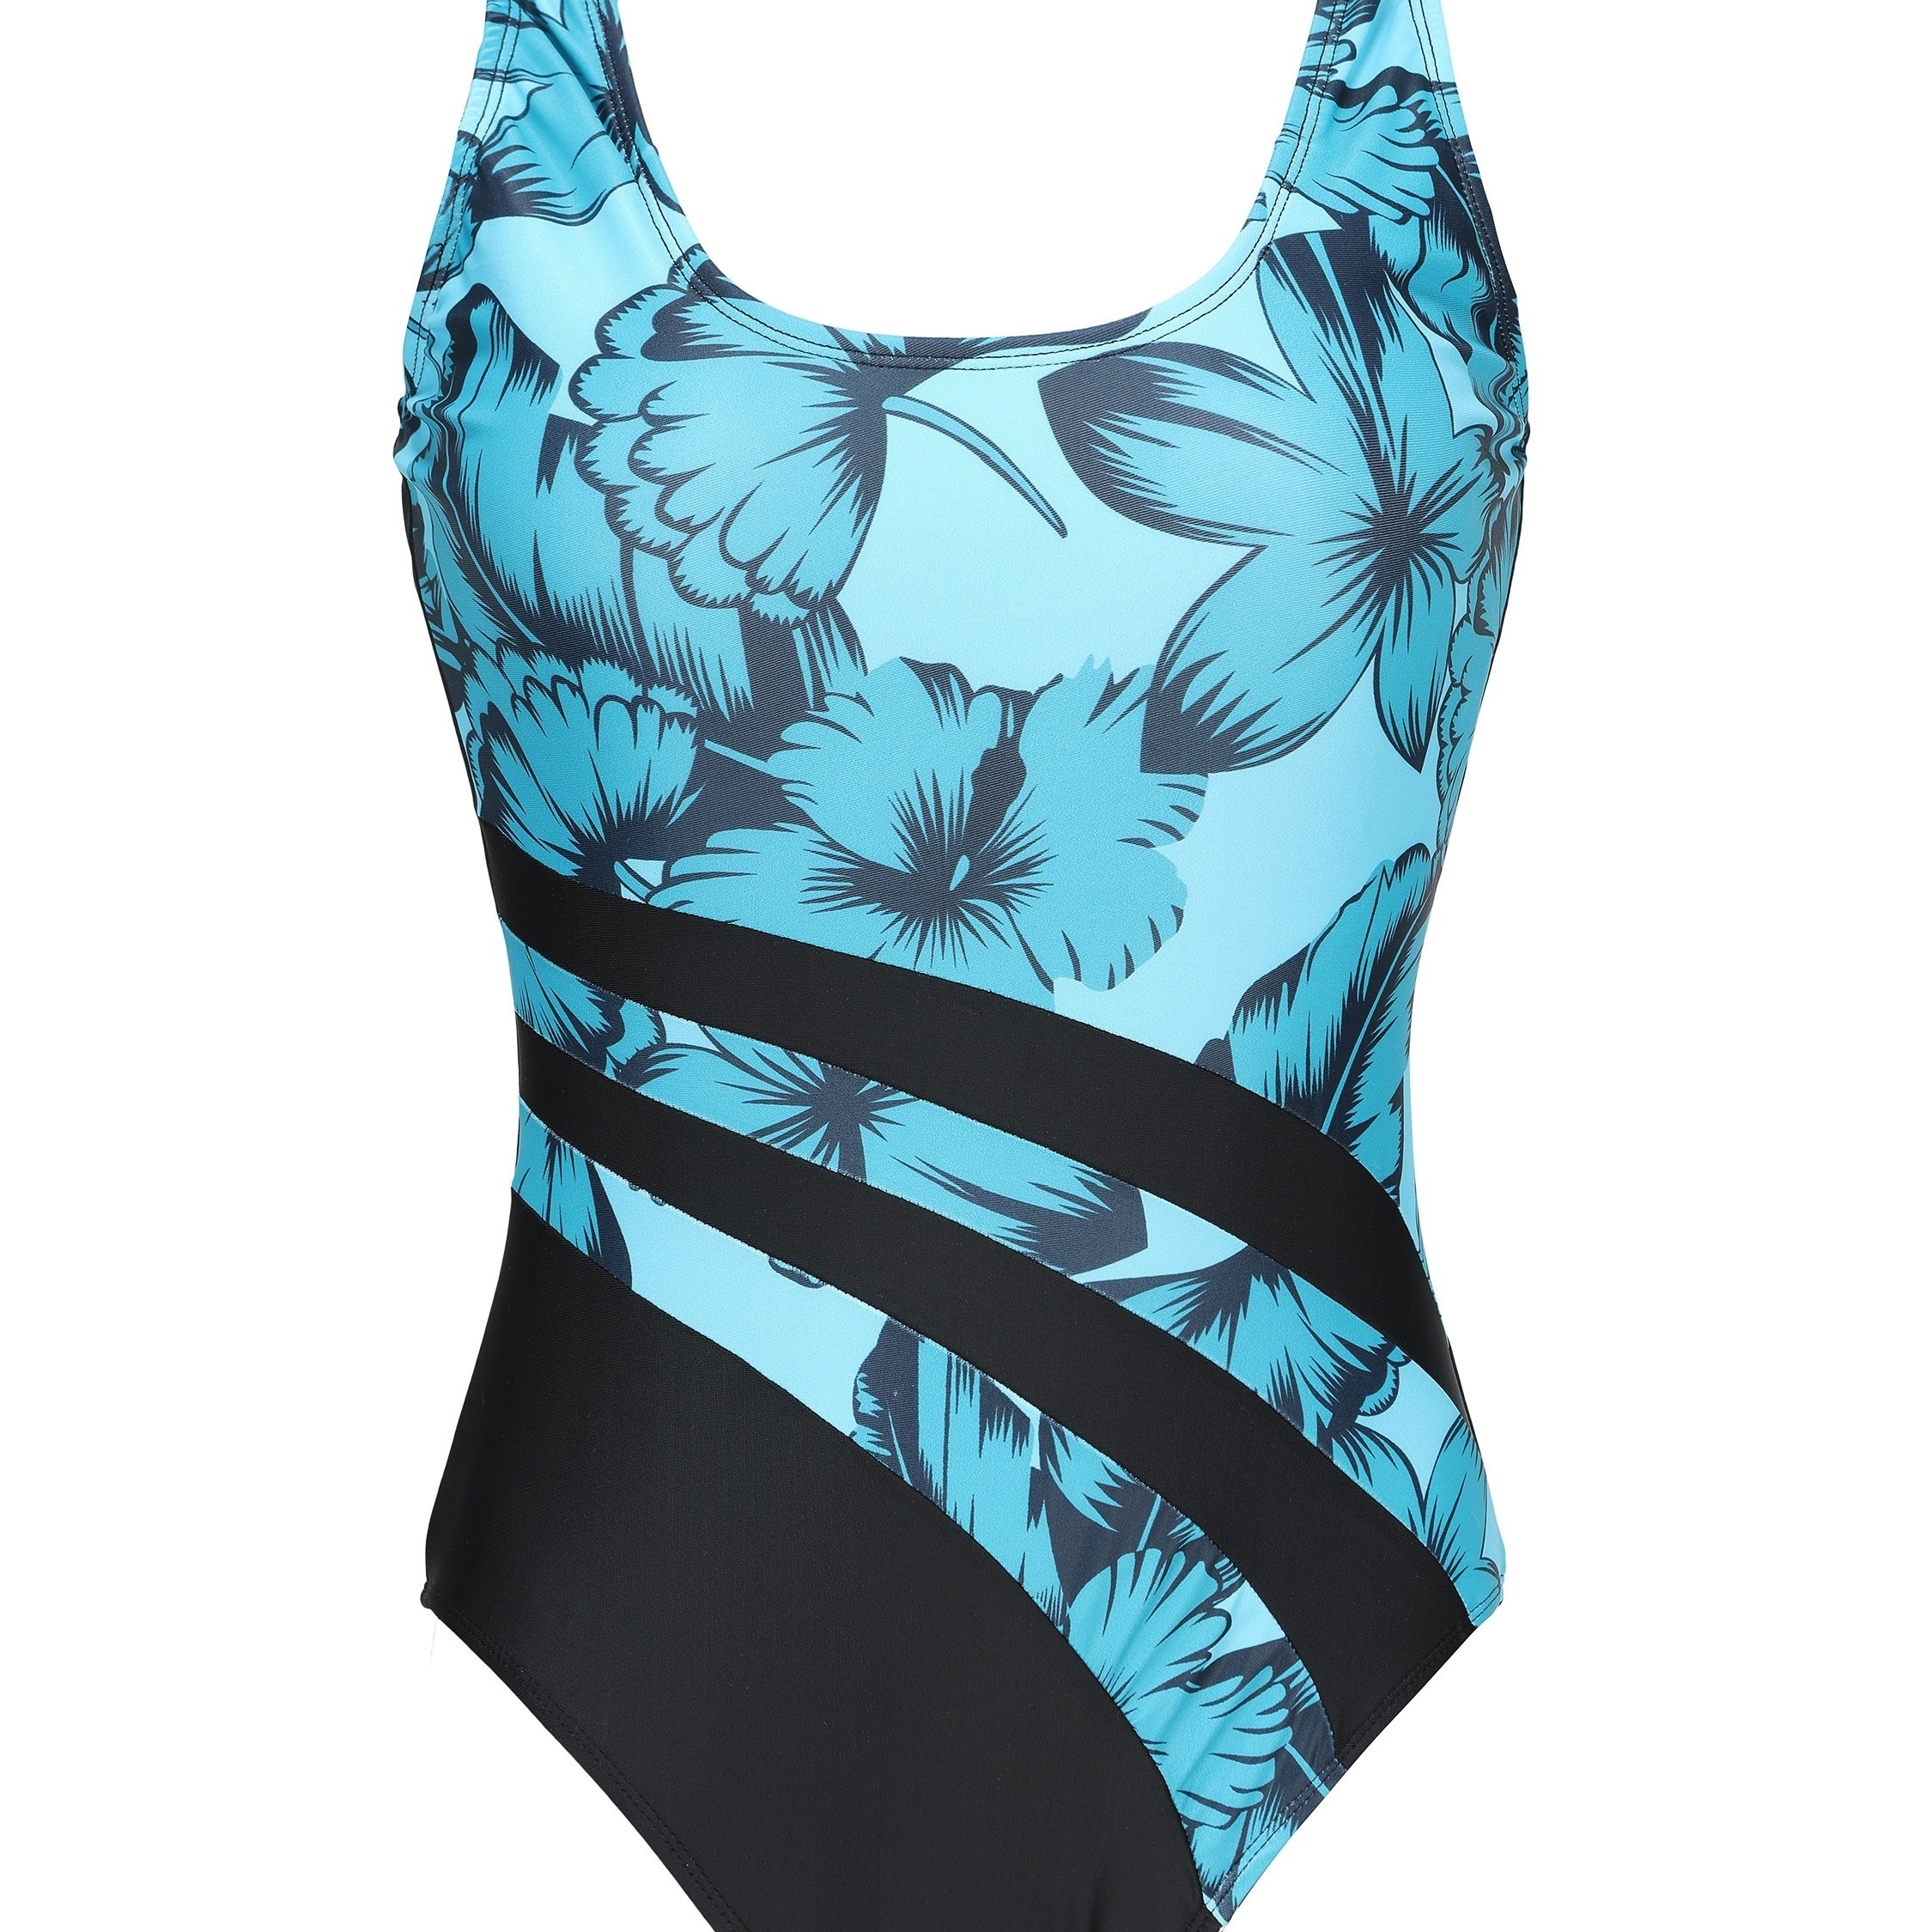 Dropship Floral Print Color Block Scoop Neck Swimsuit, High Cut